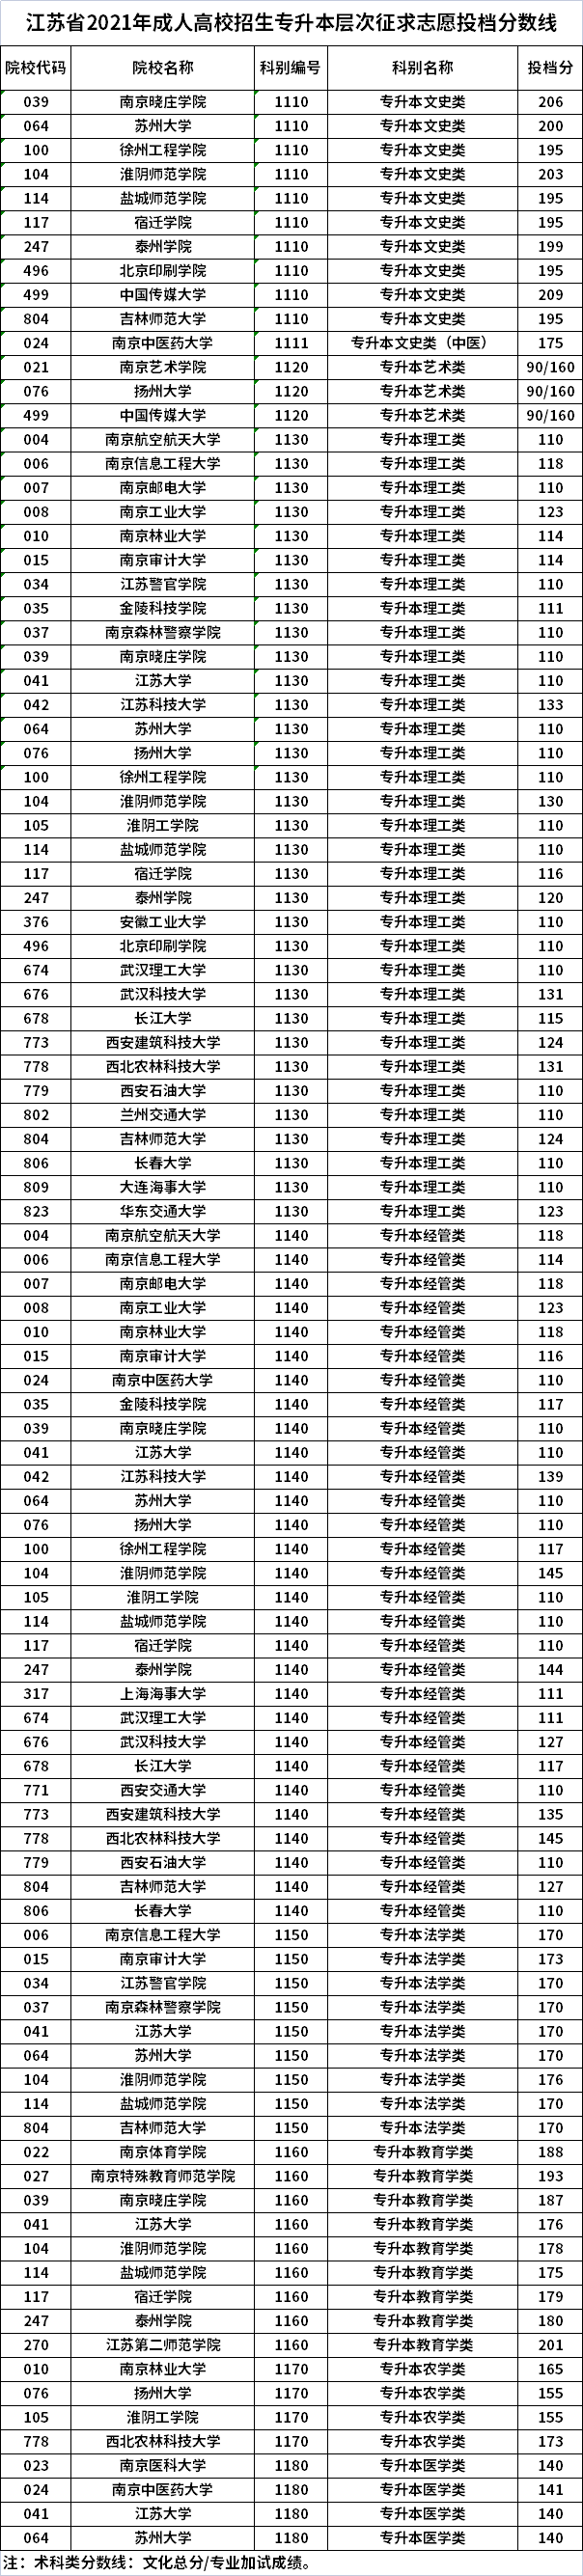 江苏省2021年成人高校招生专升本层次征求志愿投档分数线.png